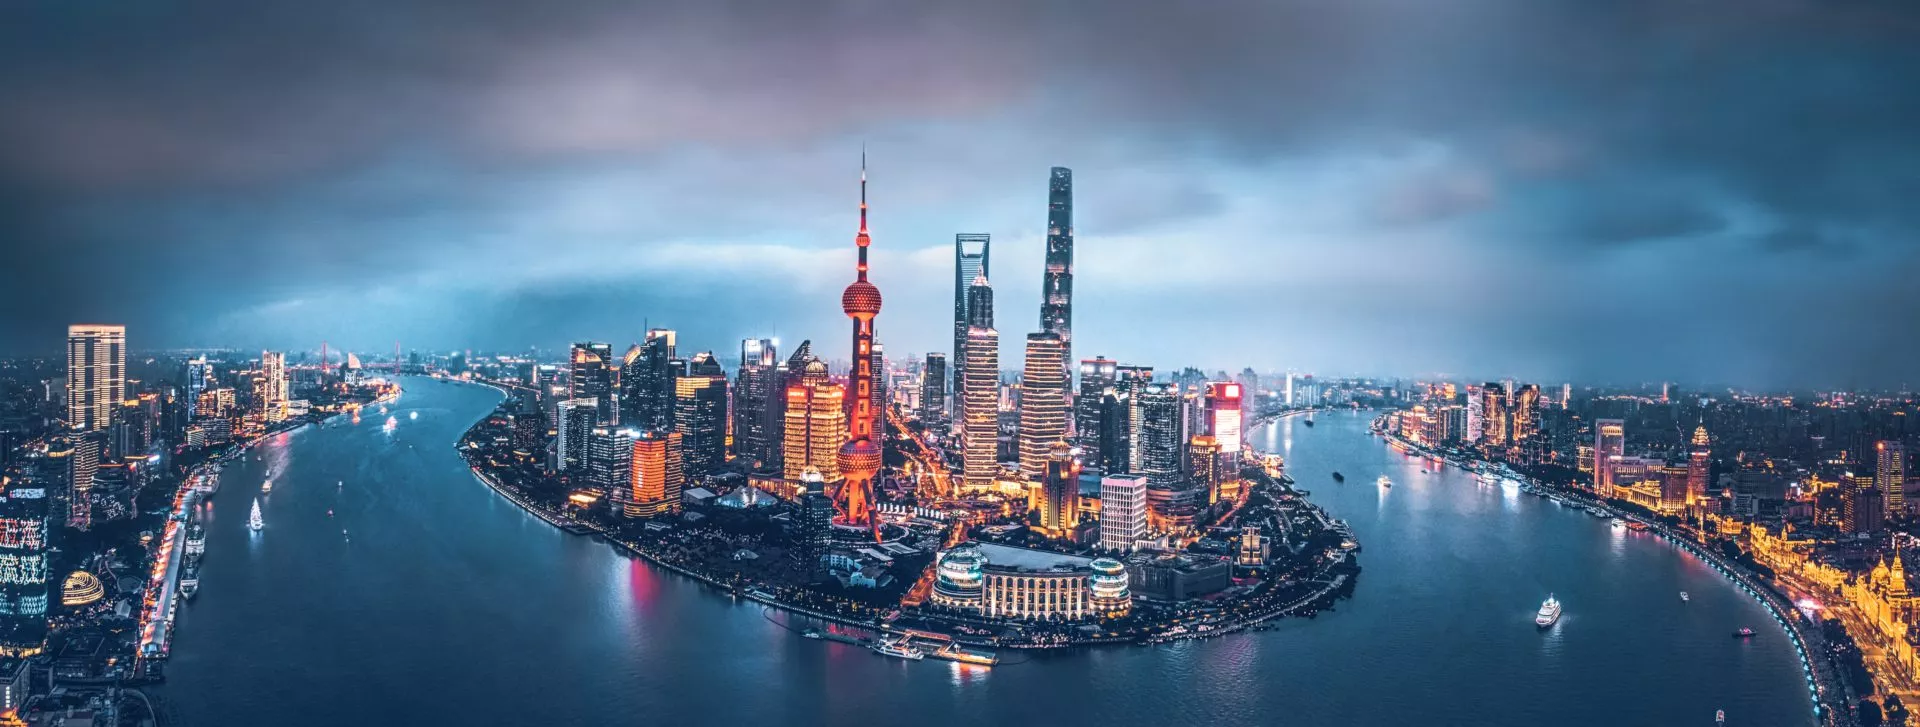 Shanghai heeft blockchain, NFT’s en Web3 op in zijn 5-jarenplan opgenomen